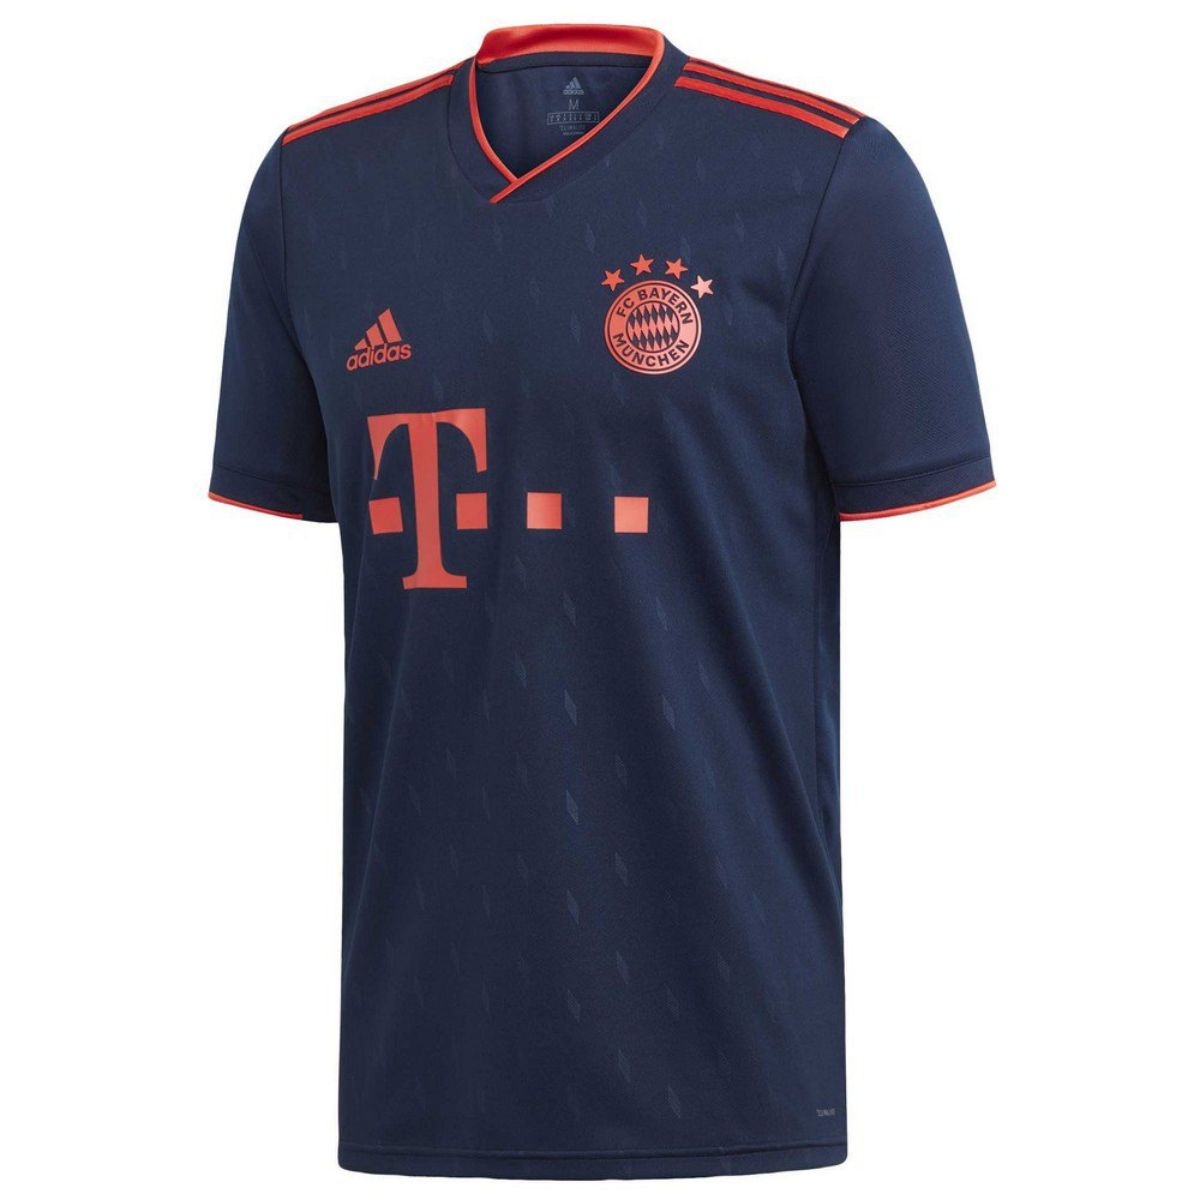 Umupira wa siporo, Bayern Munich jersey